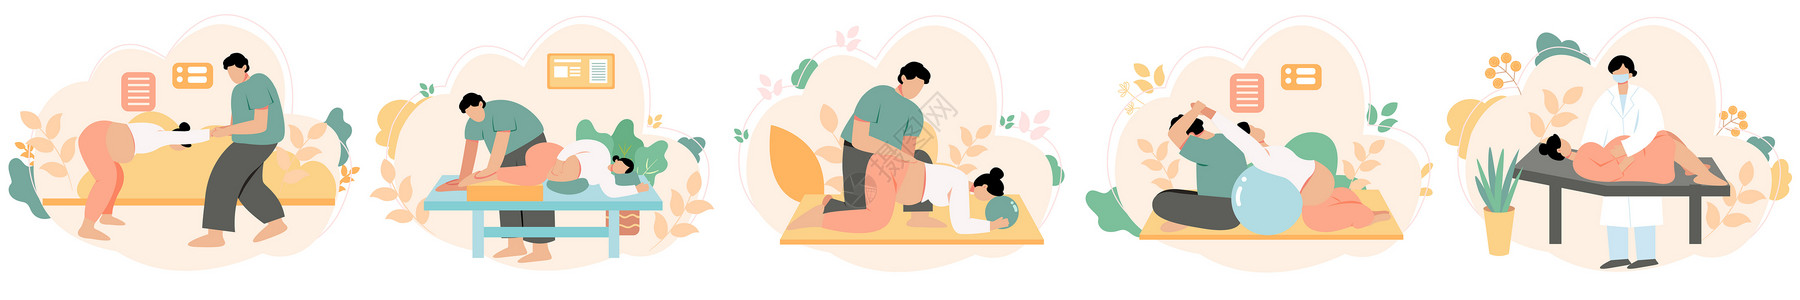 孕妇产前护理训练孕期锻炼svg矢量插画元素高清图片